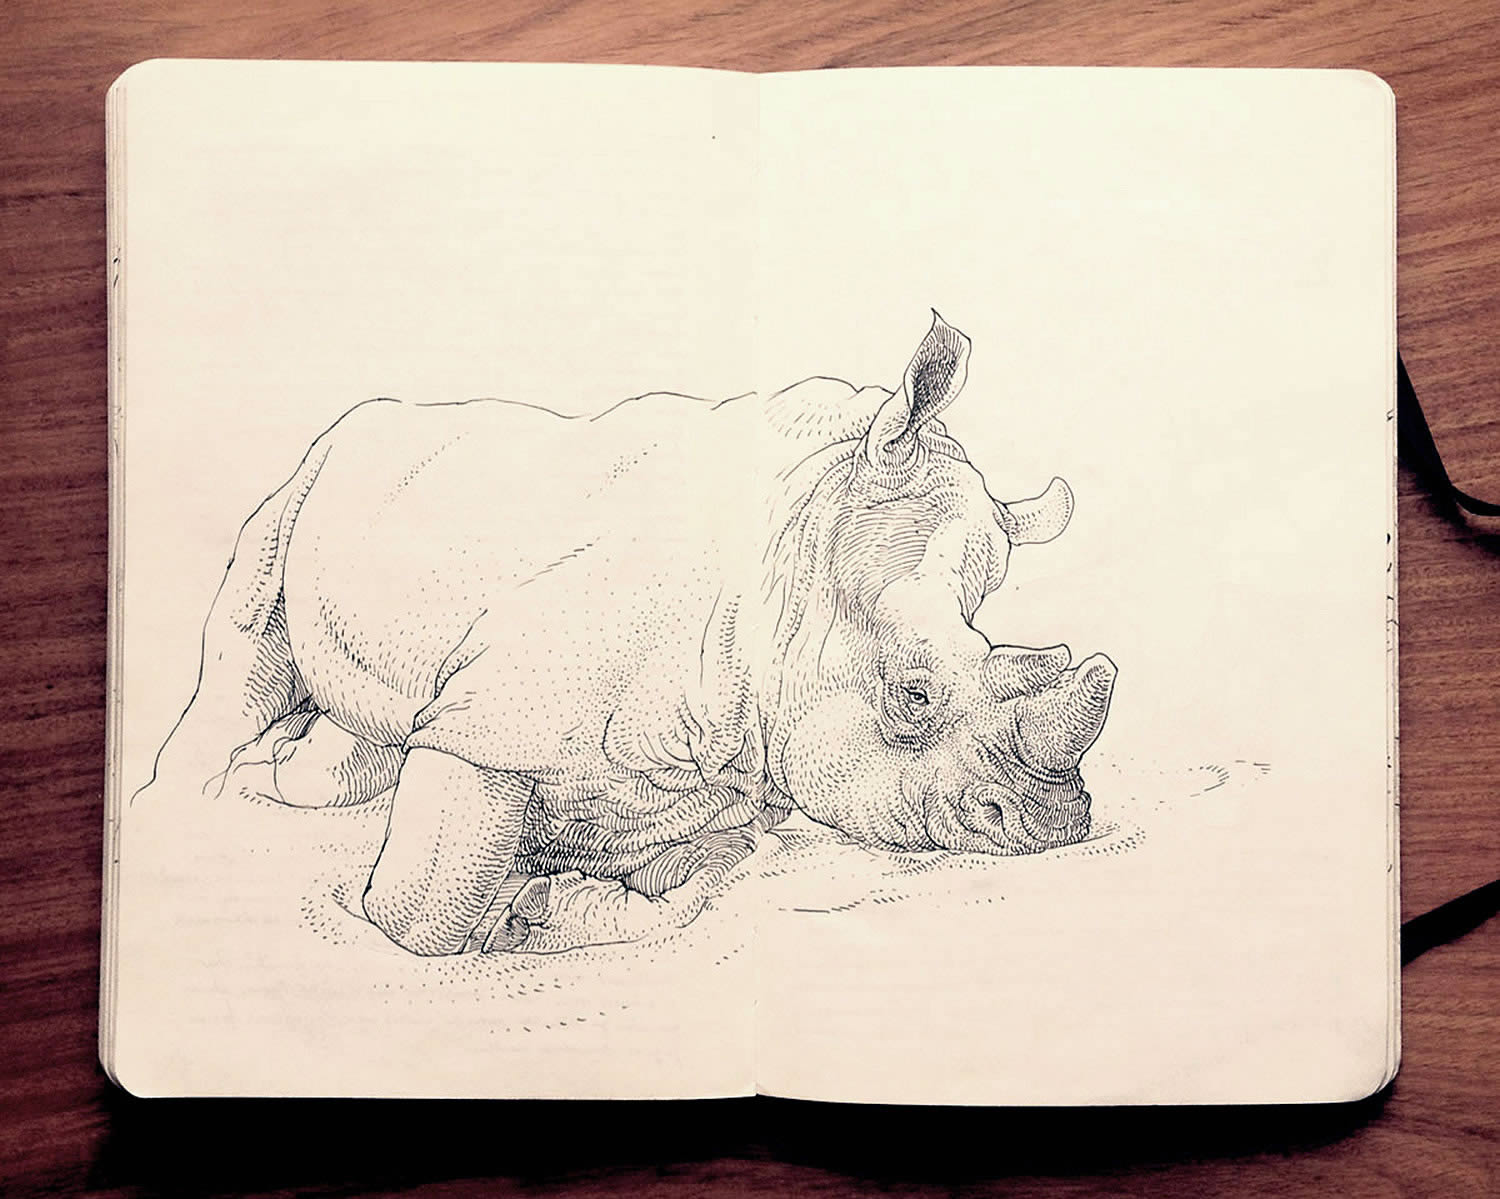 rino sketchbook drawing by Jared Muralt